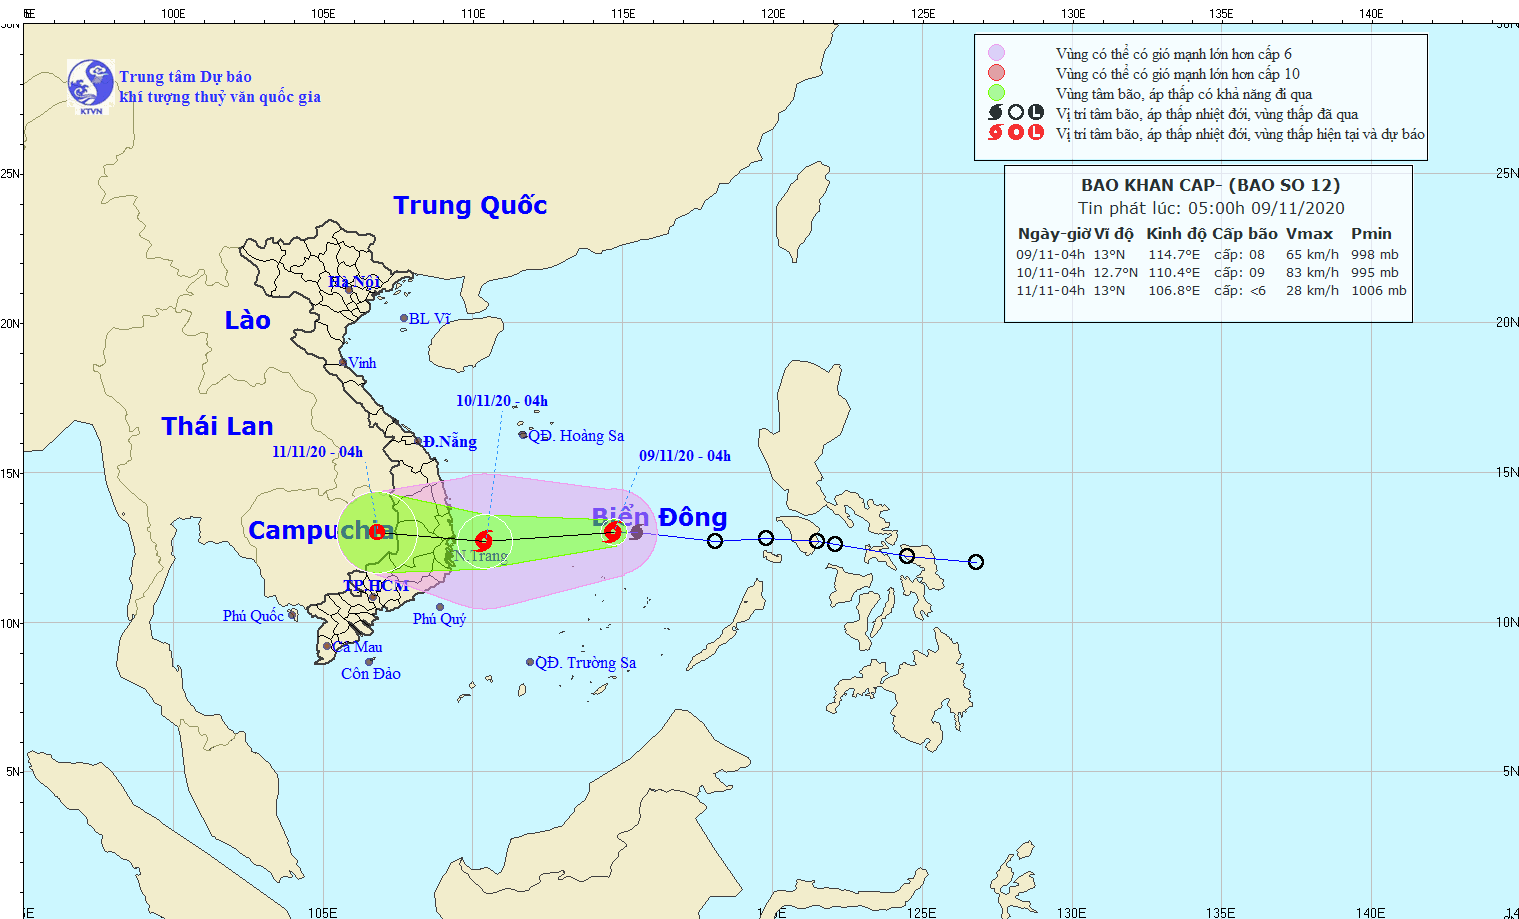 Dự báo thời tiết: Tin bão khẩn cấp, cơn bão số 12 đi vào đất liền các tỉnh từ Phú Yên đến Ninh Thuận - 1